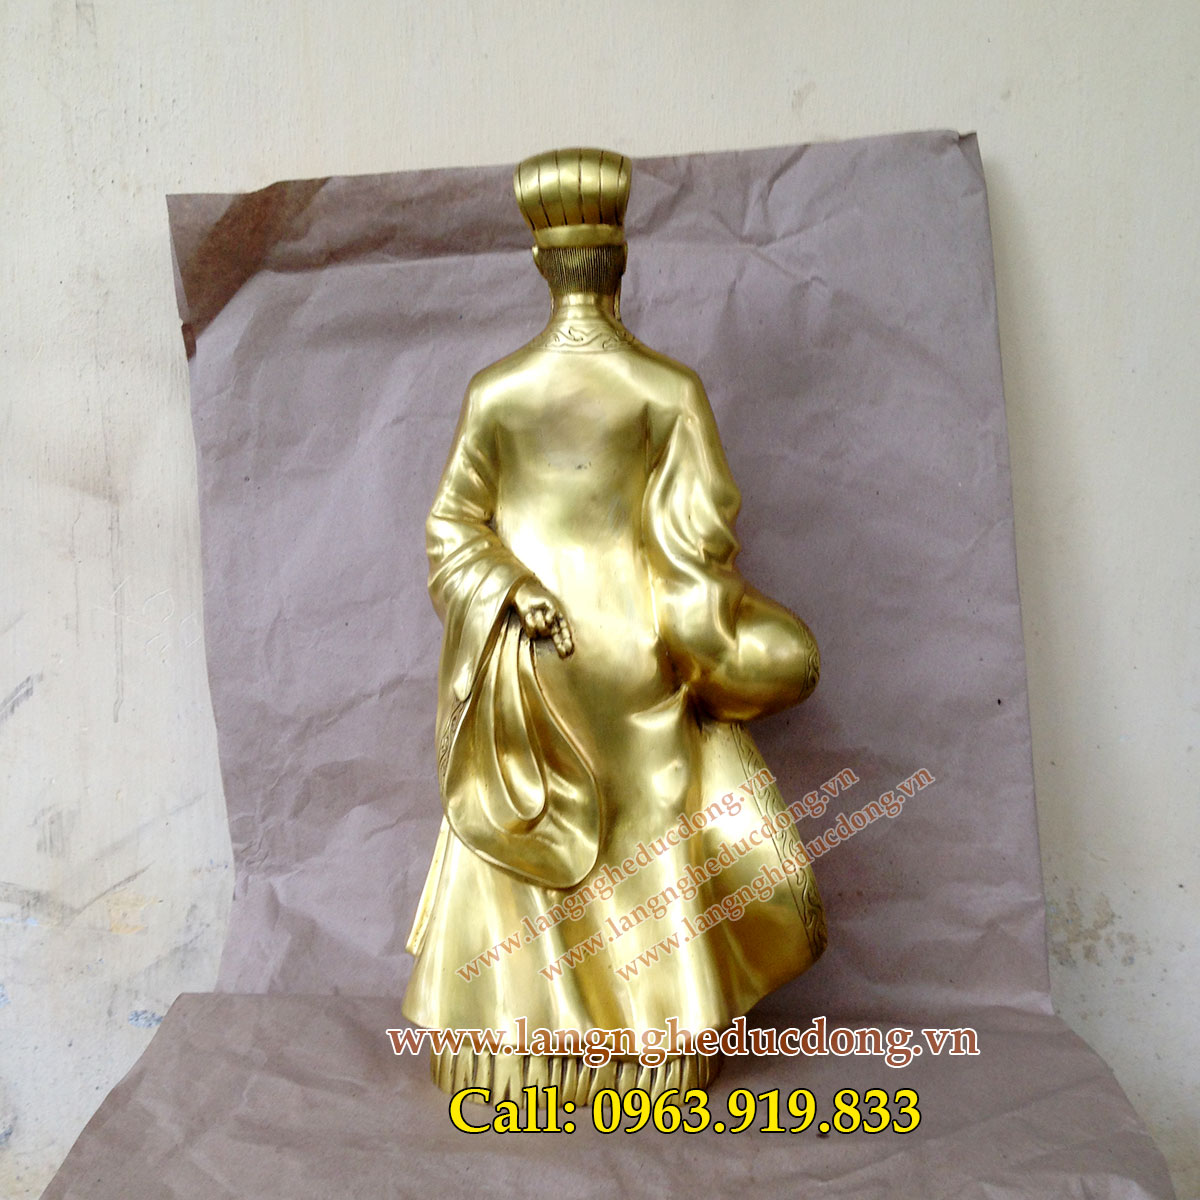 langngheducdong.vn - Tượng Khổng Minh cao 50cm, tượng đồng Gia Cát Lượng